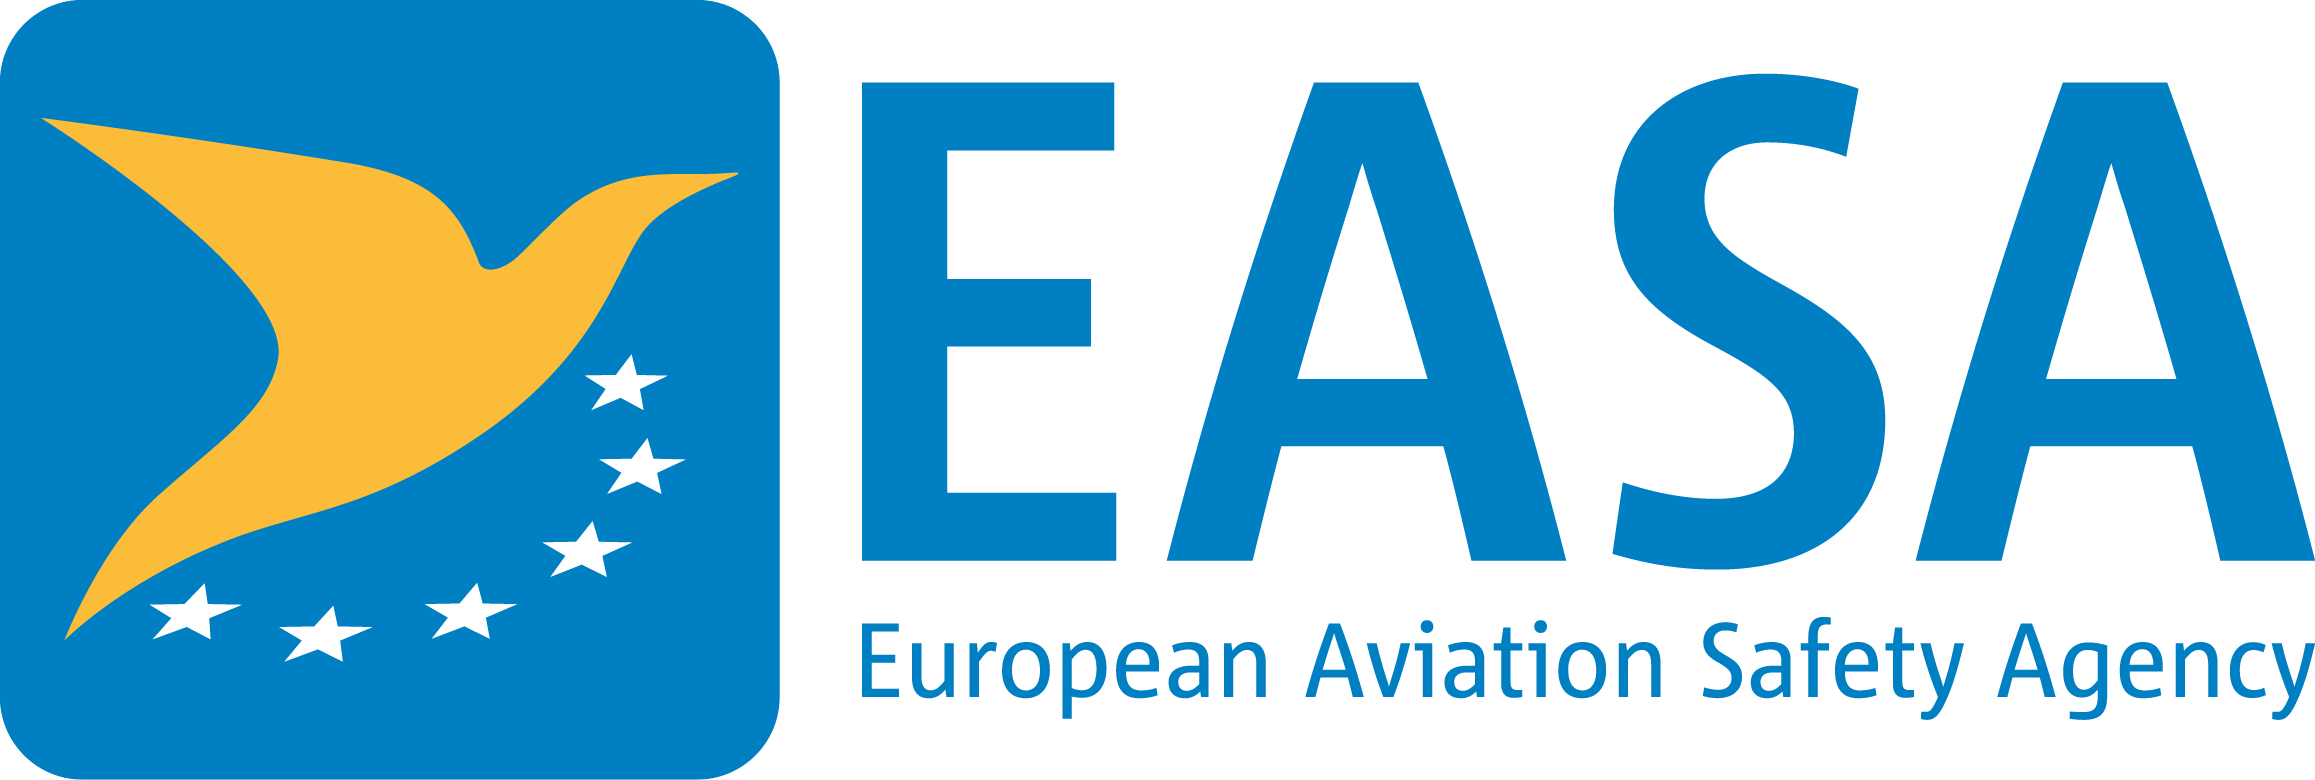 Agence européenne de la sécurité aérienne (EASA)